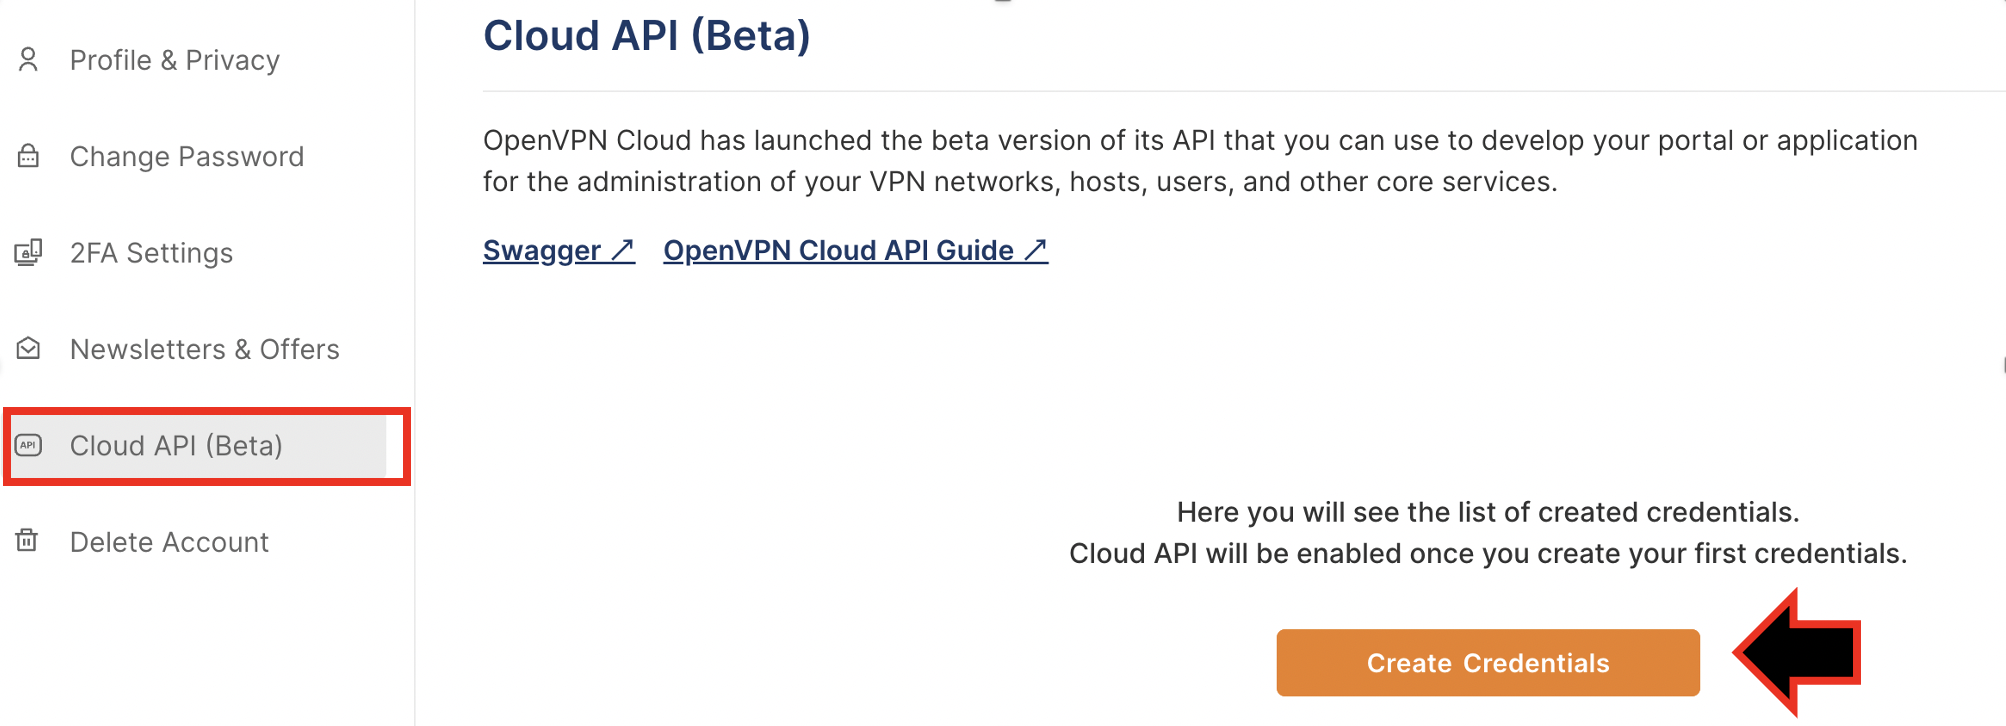 Cloud_API.png